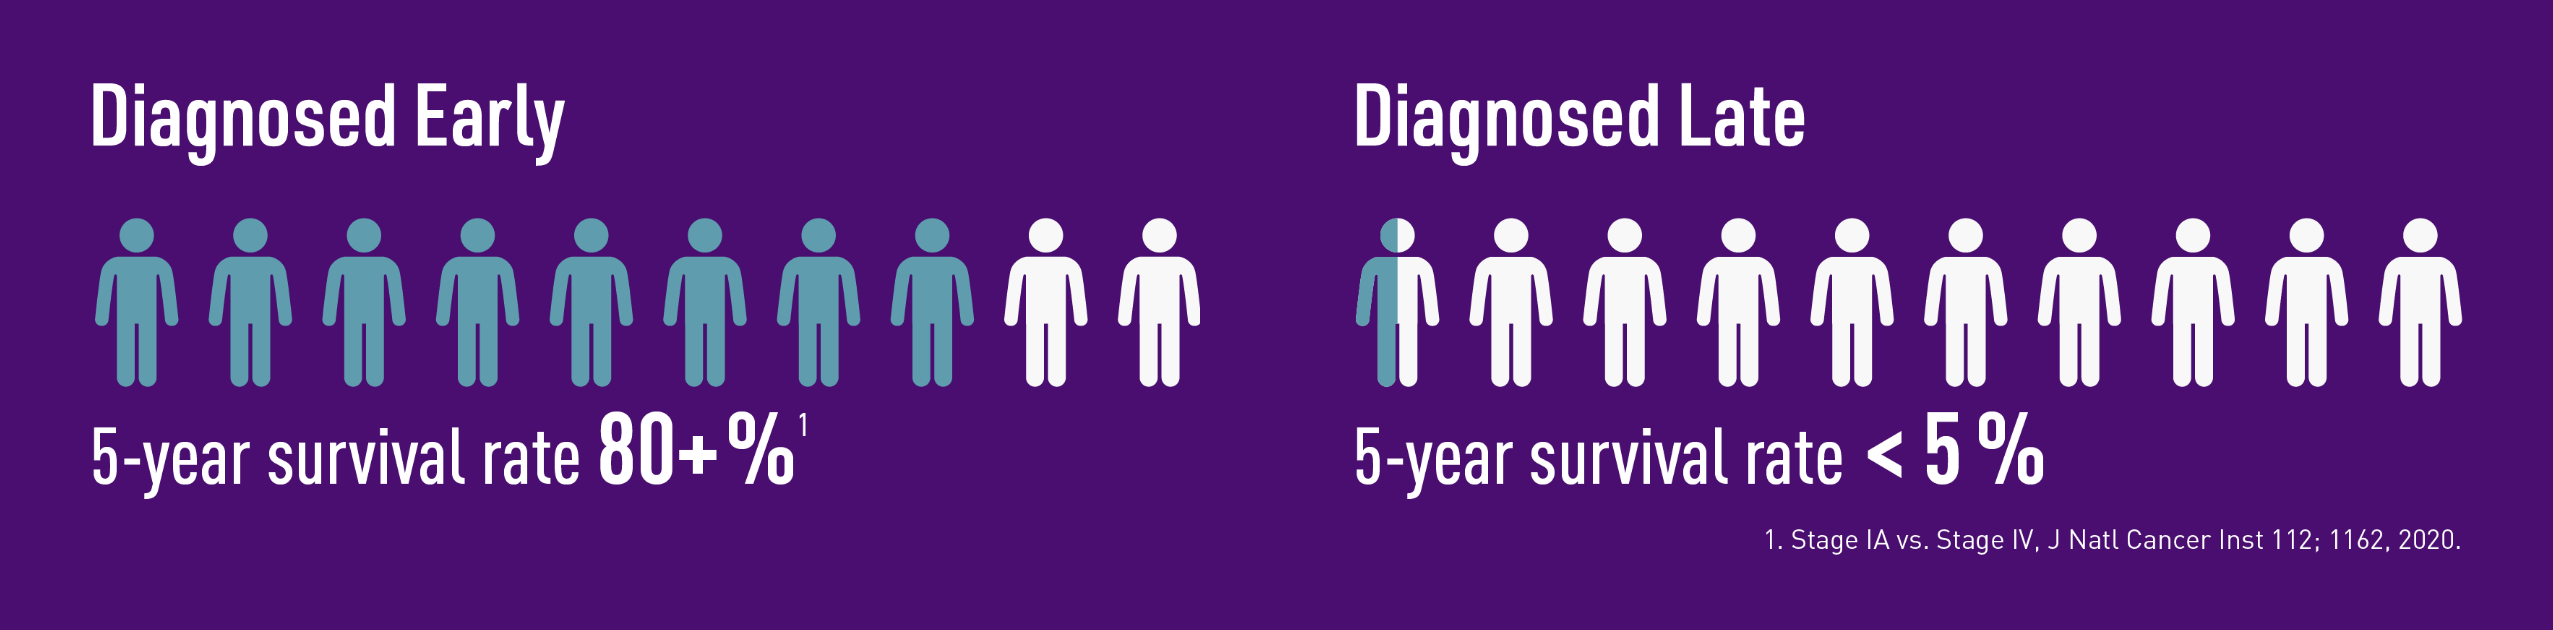 早期/晚期诊断:早期诊断，5年生存率超过80%，但晚期诊断，5年生存率不到5%